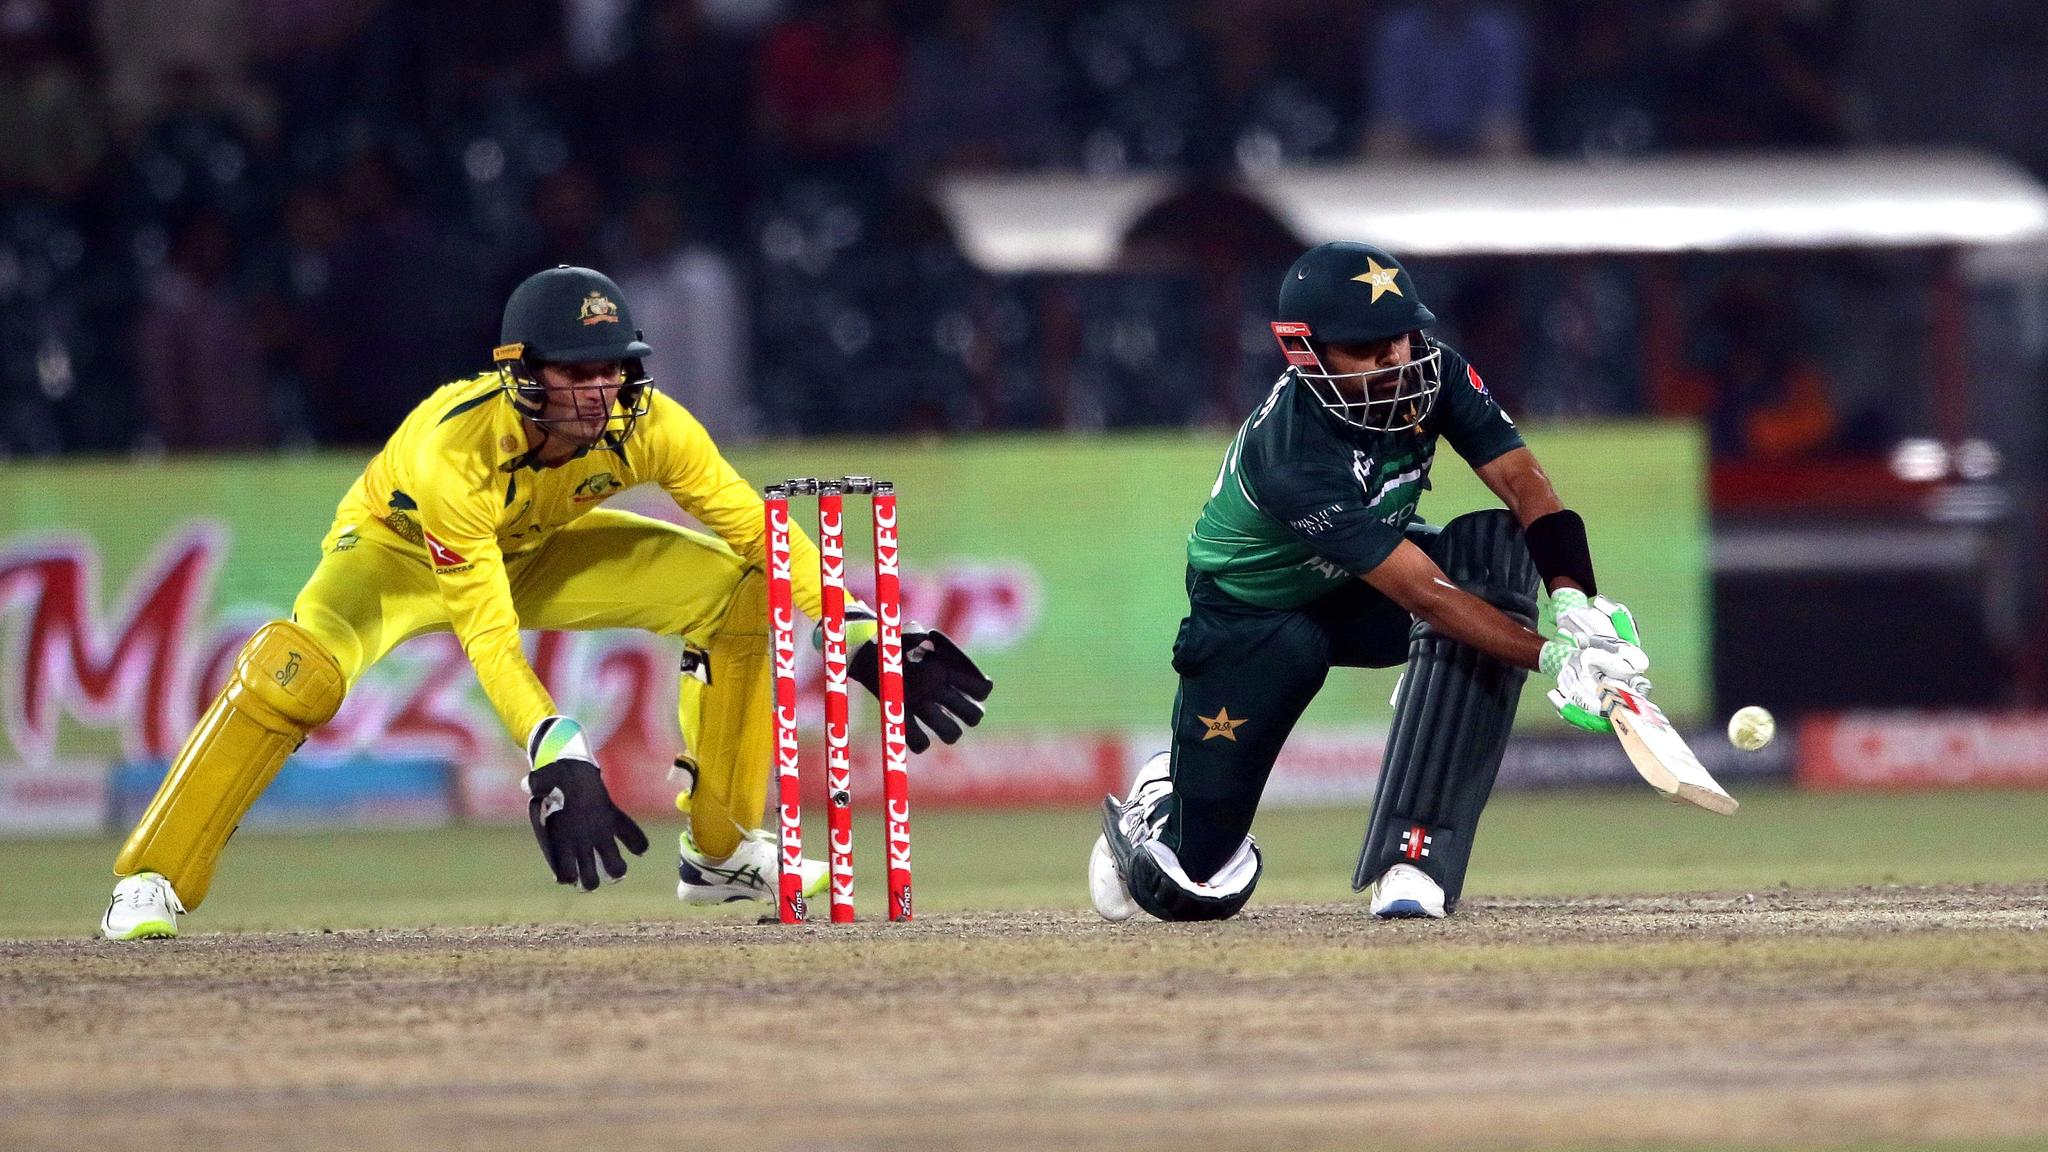 Partida de críquete entre as seleções do Paquistão (de uniforme verde) e da Austrália (de amarelo): esporte tem versões mais curtas que poderiam ser incorporadas ao programa olímpico.